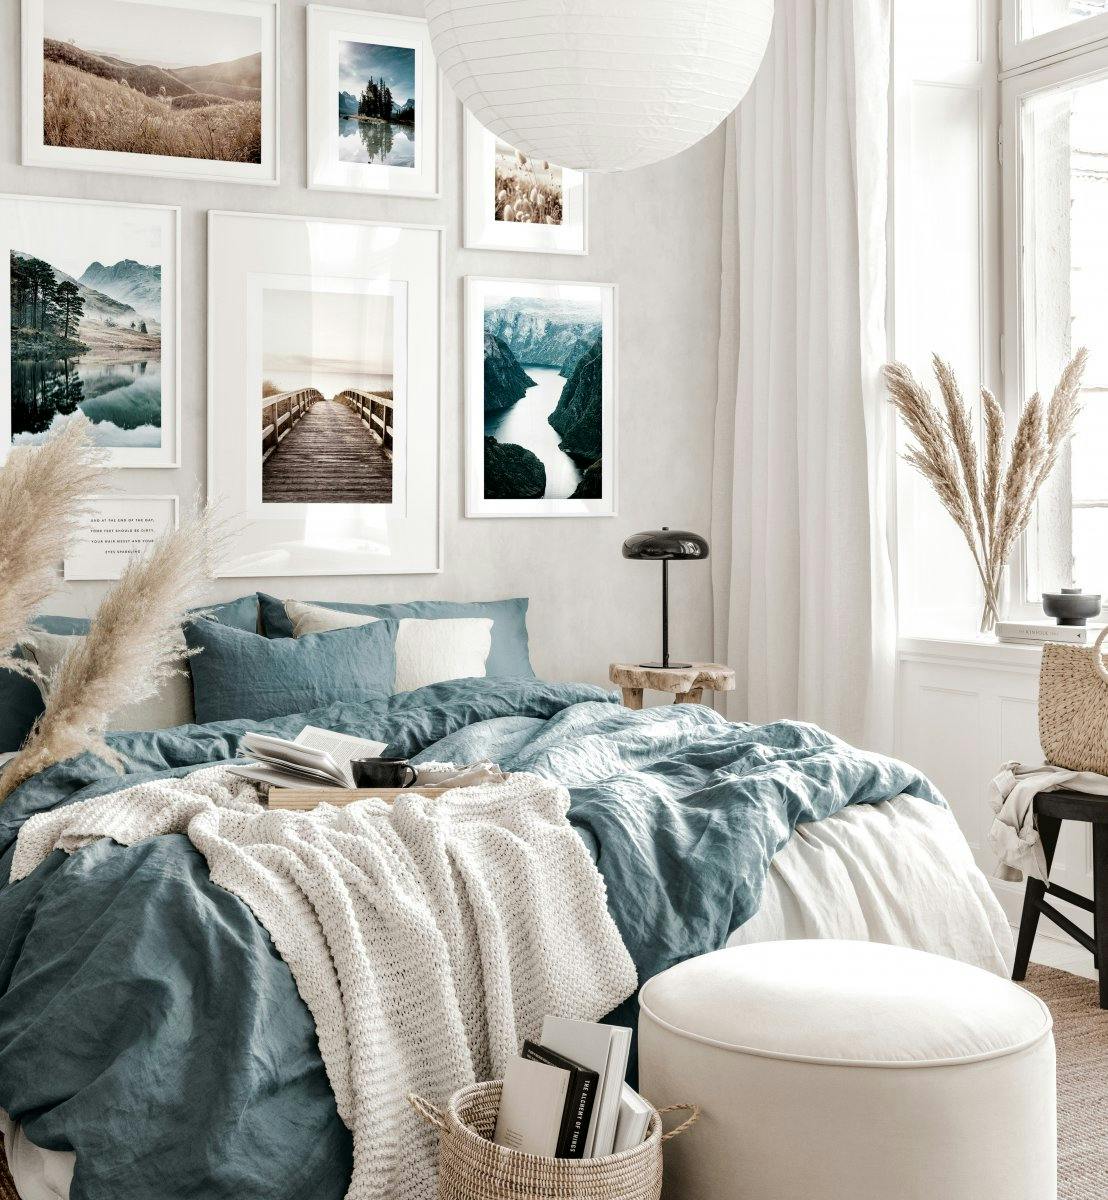 Gallleria a parete rilassante camera da letto blu e beige poster natura e cornici bianche in legno